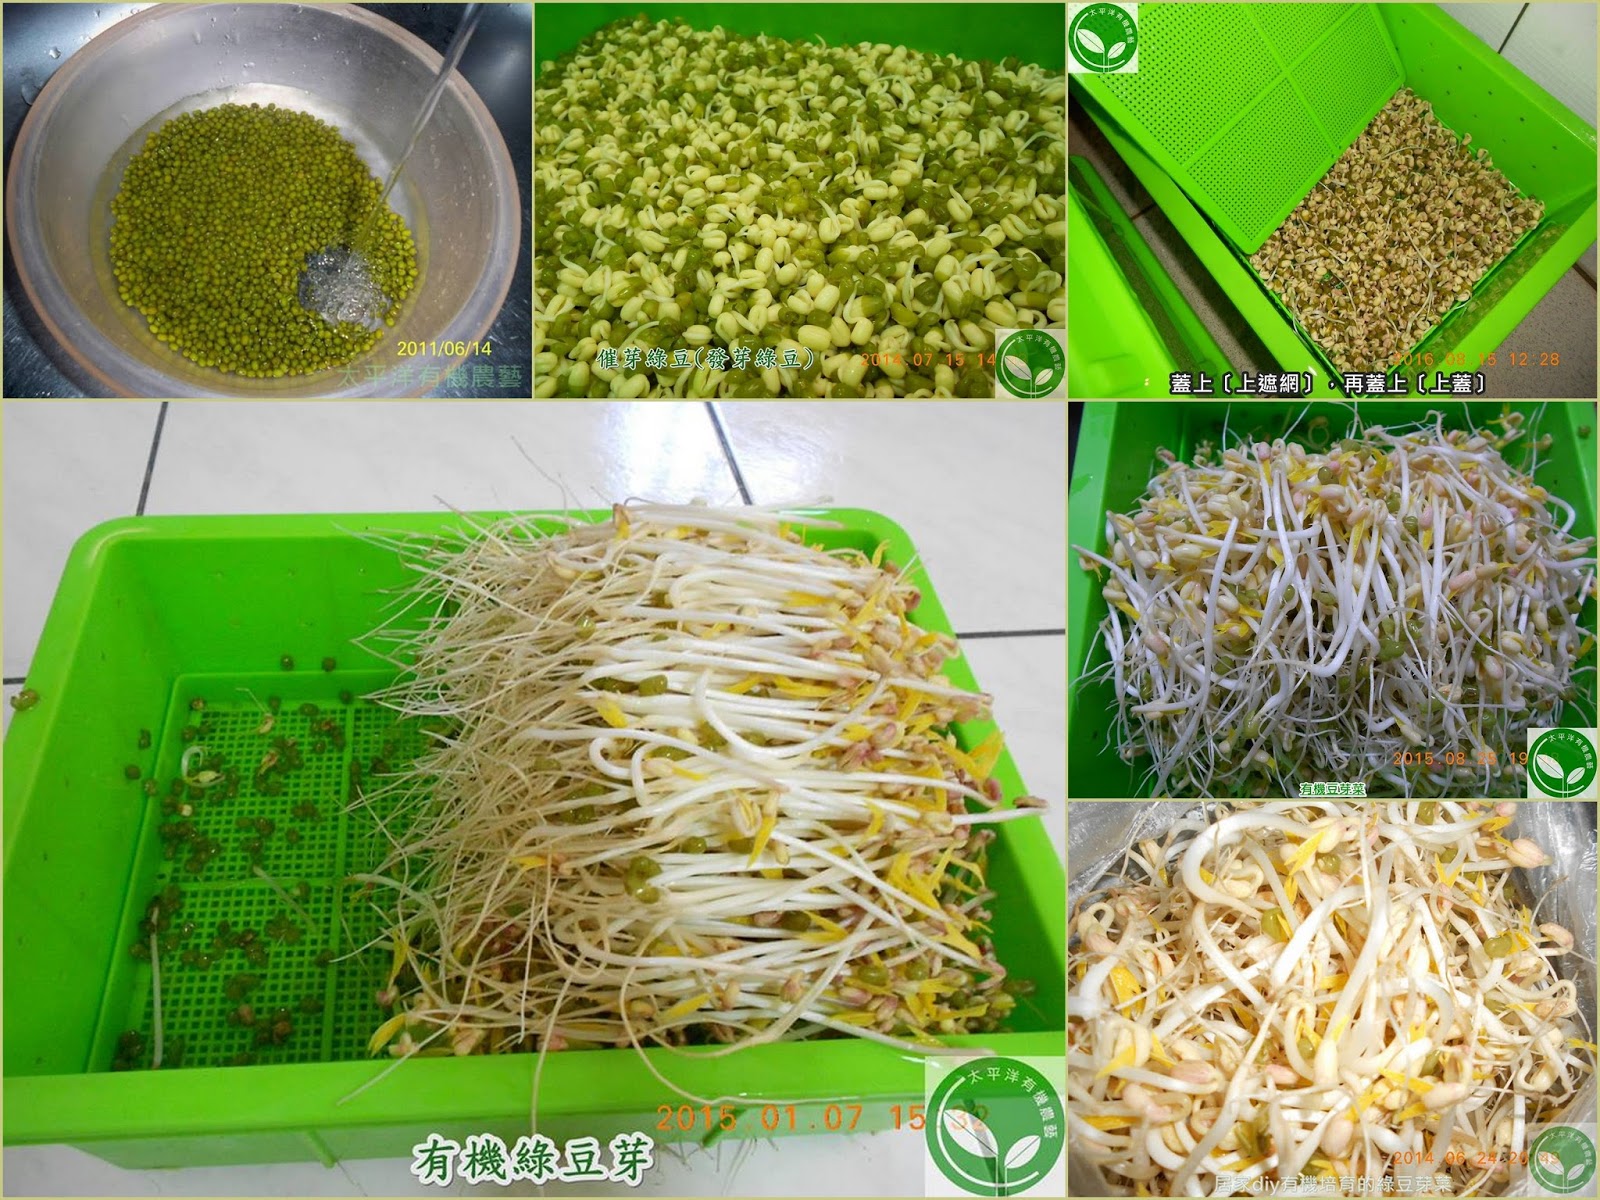 綠豆,綠豆的功效,綠豆子,韓式涼拌豆芽菜食譜,豆芽,種綠豆,發綠豆芽,如何發綠豆芽,炒豆芽菜,種綠豆生長過程